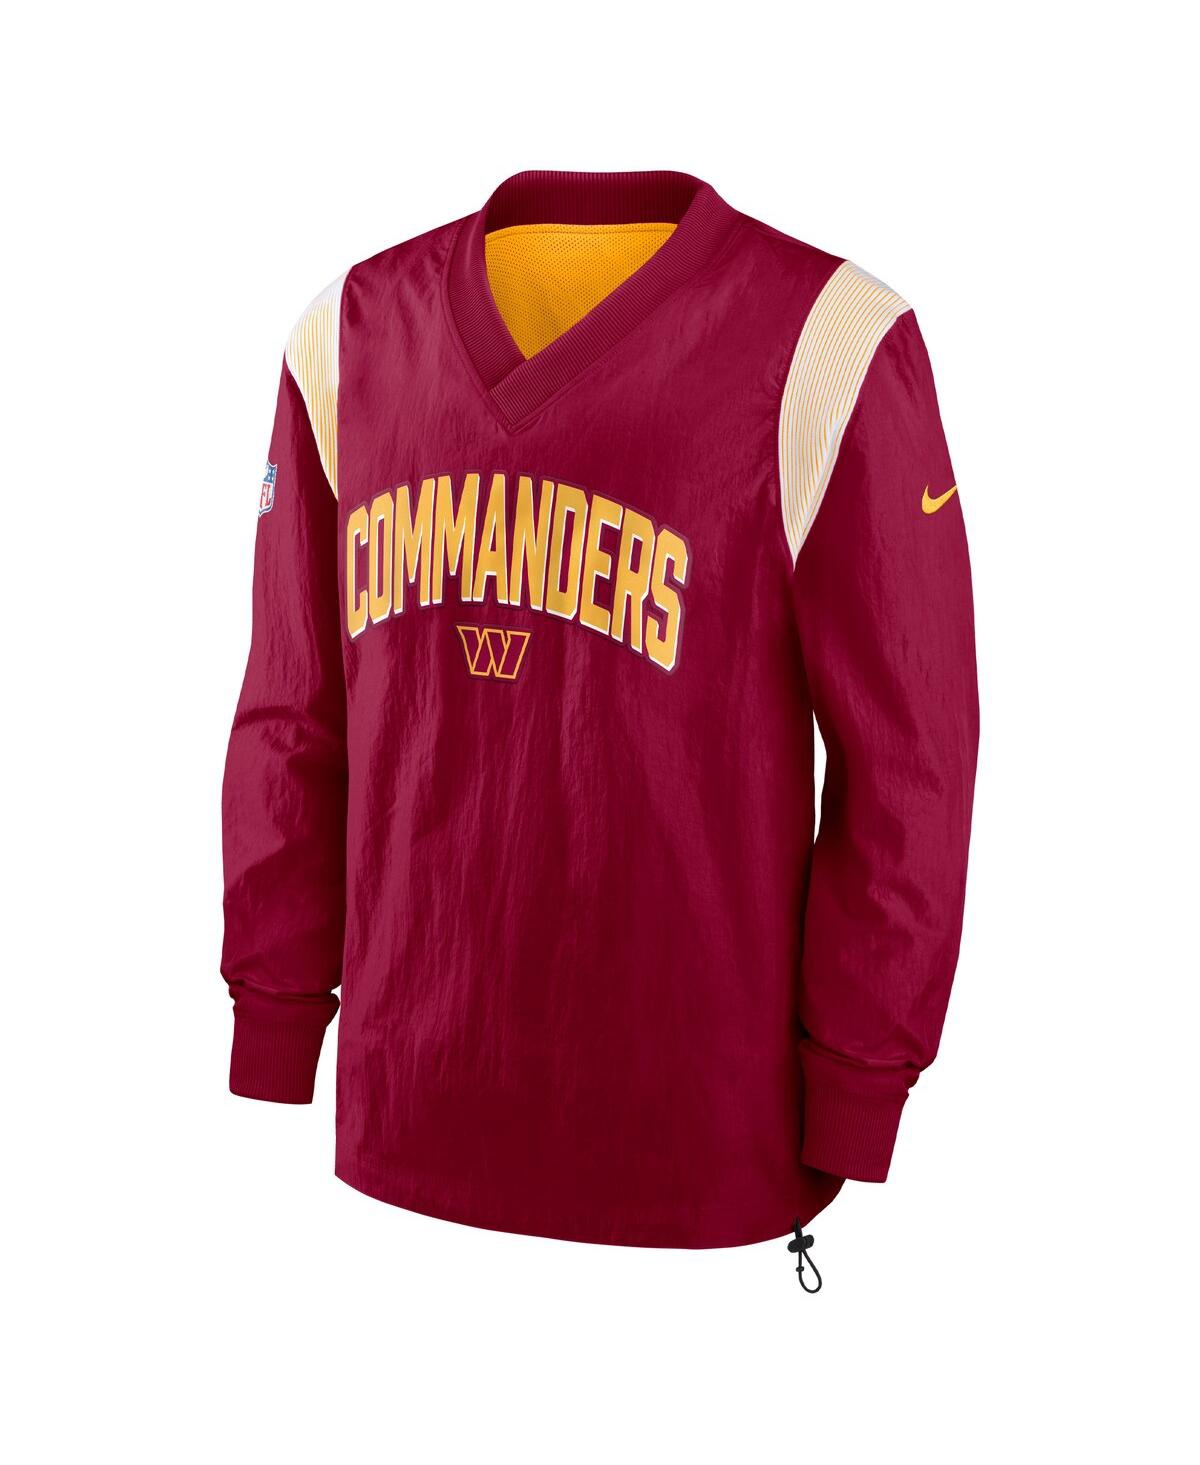 Shop Nike Men's  Burgundy Washington Commanders Sideline Athletic Stack V-neck Pullover Windshirt Jacket